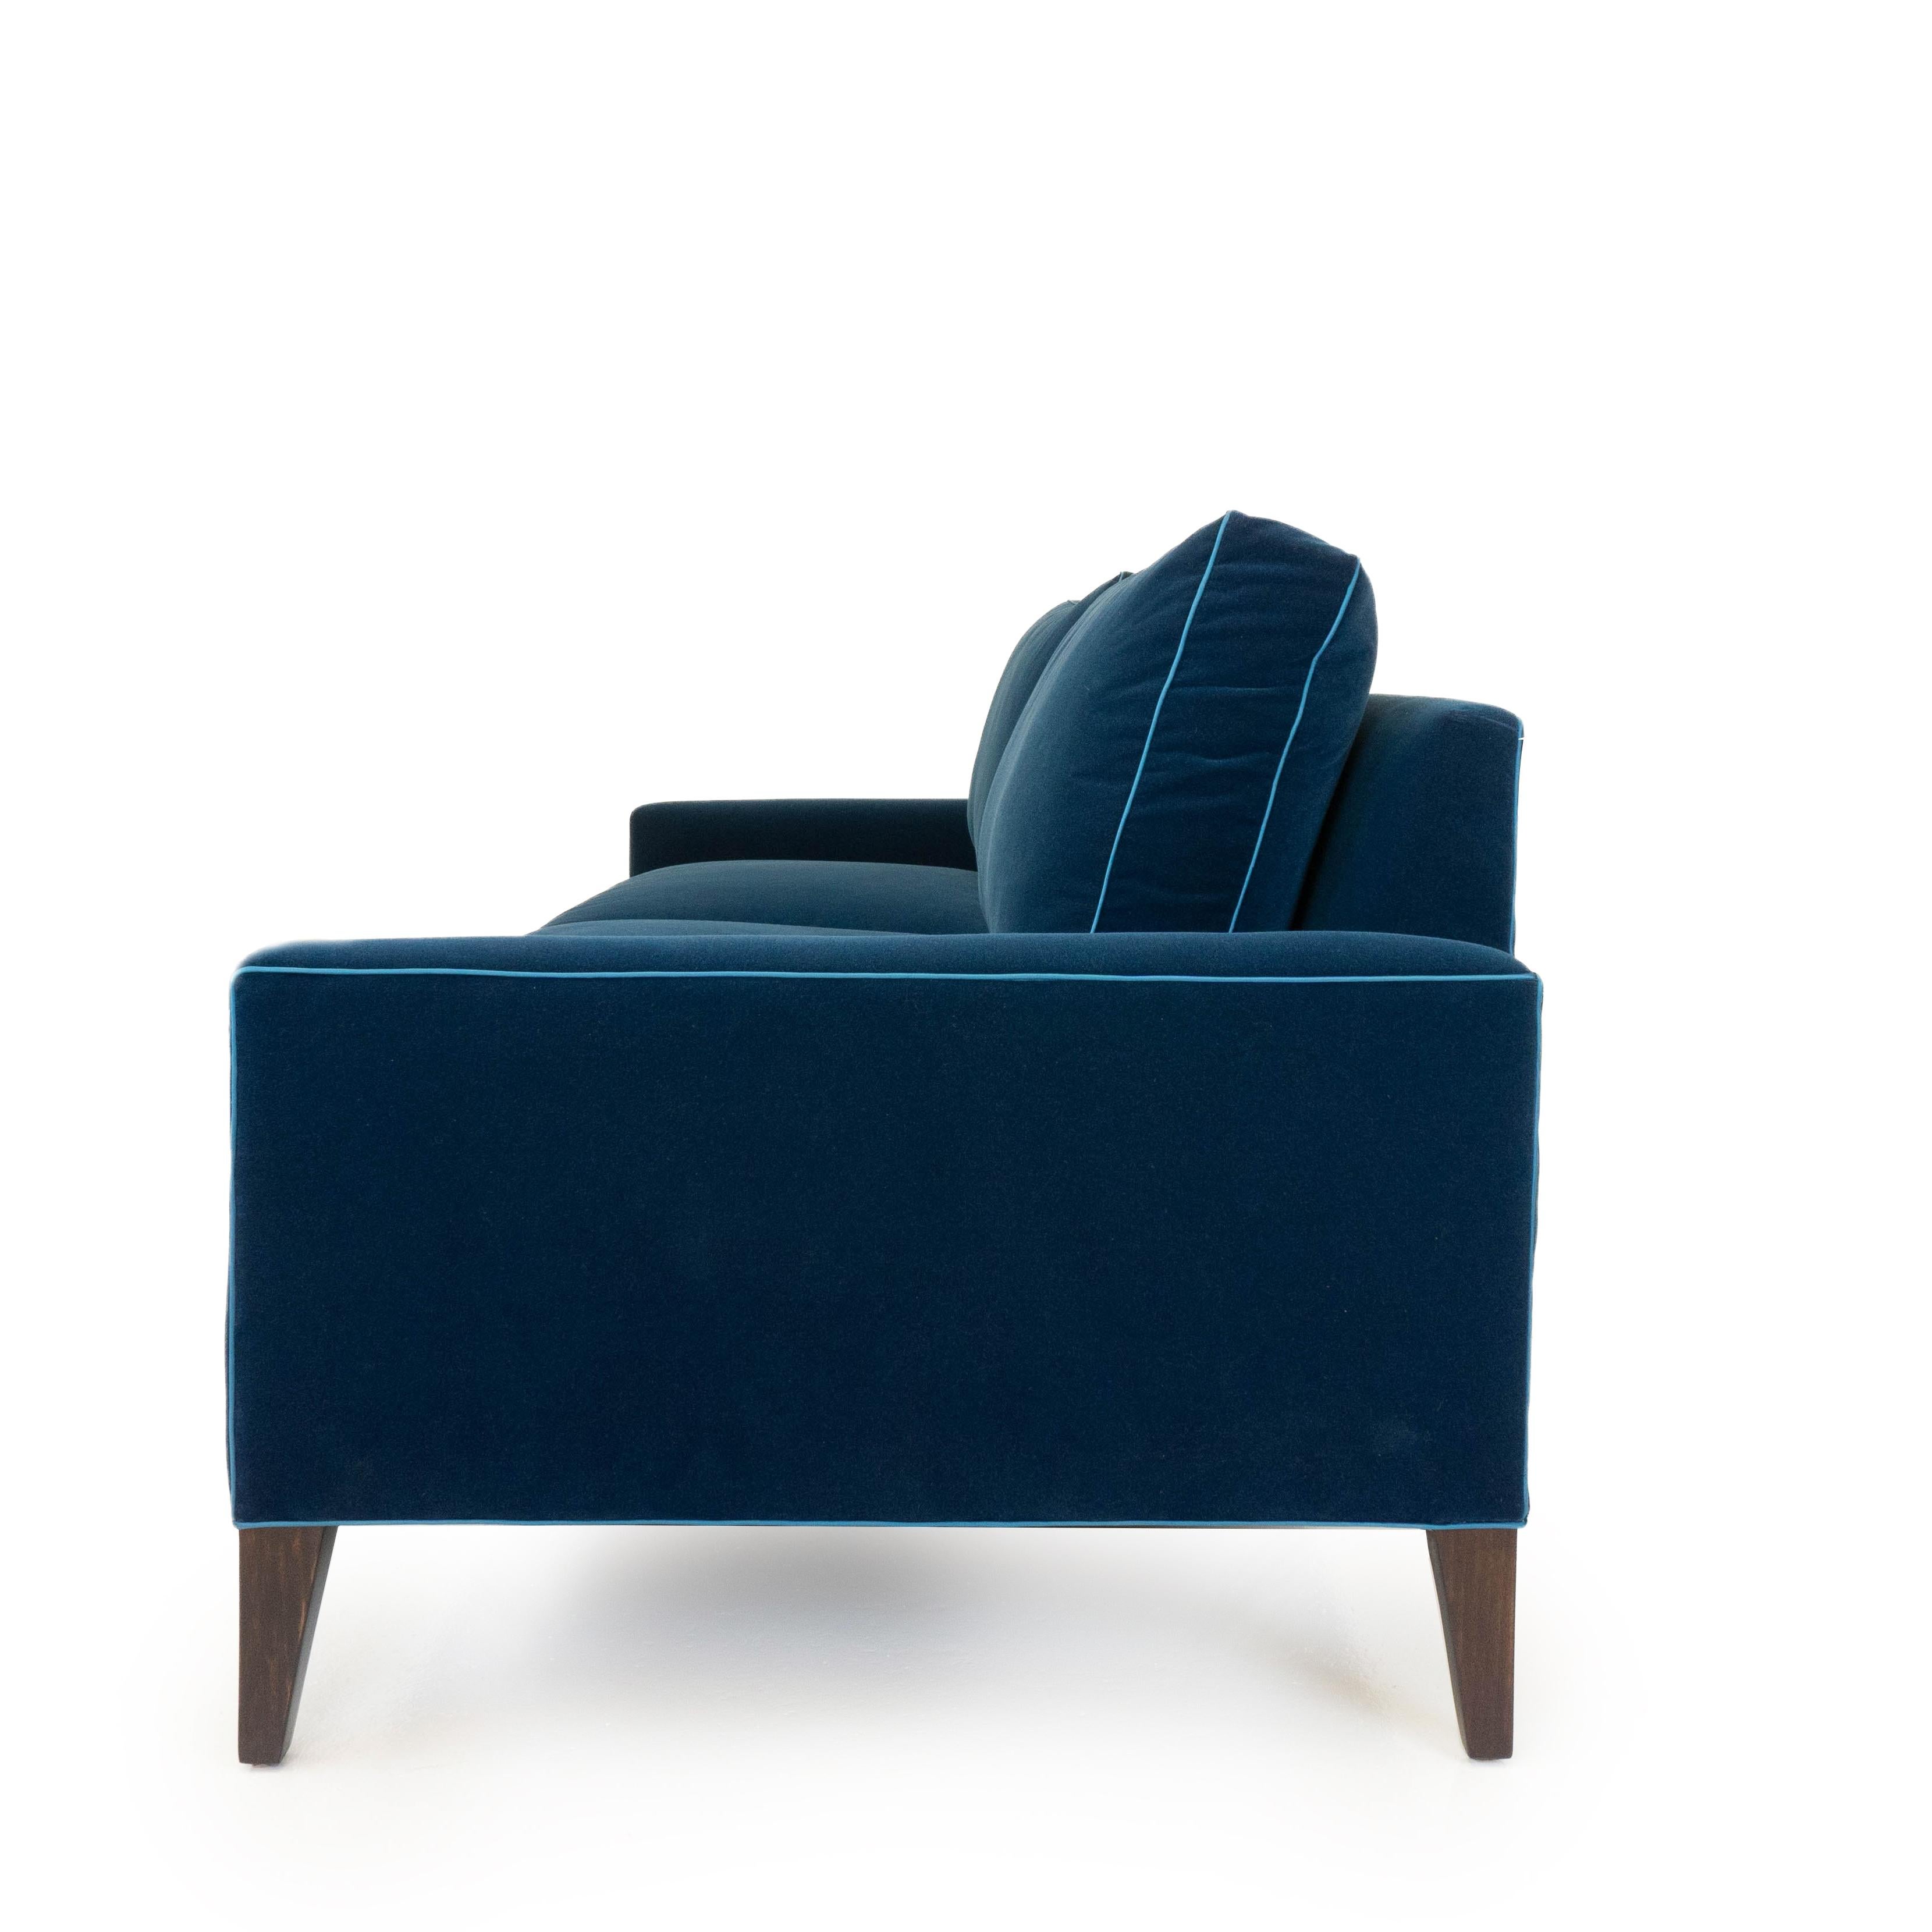 American Modern Two Cushion Sofa in Dark Blue Velvet For Sale